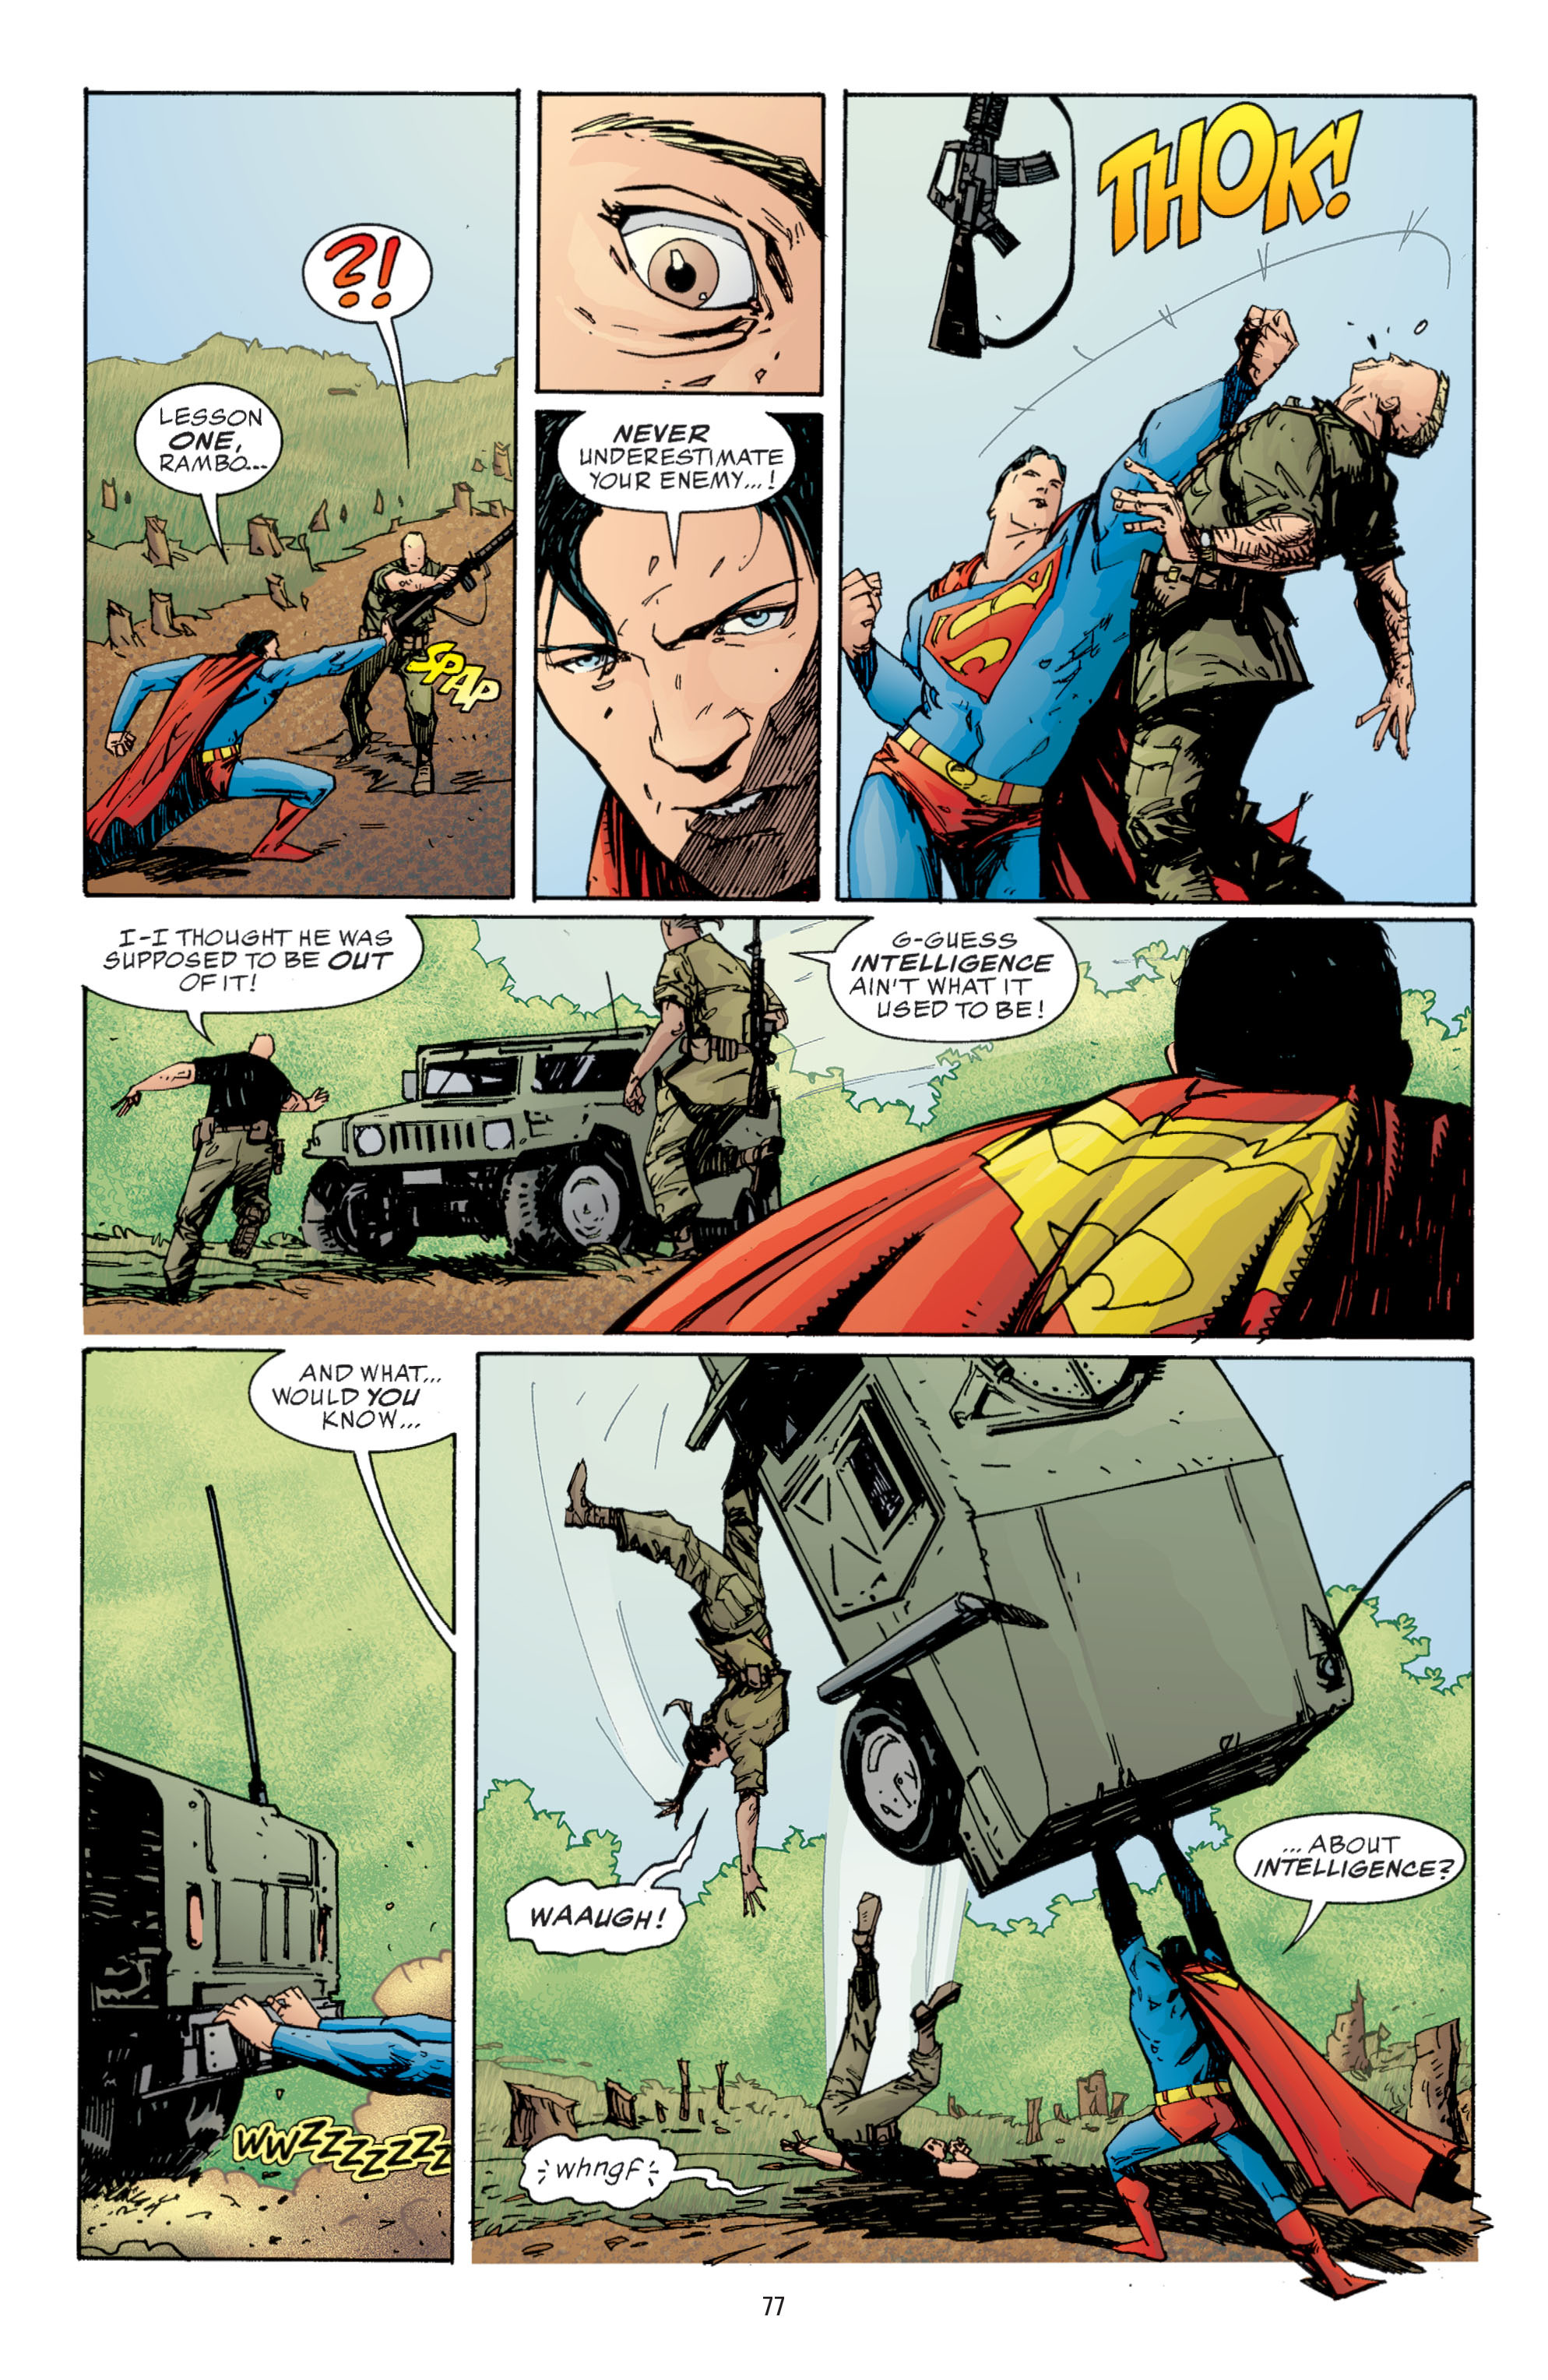 DC Comics/Dark Horse Comics: Justice League Full #1 - English 75